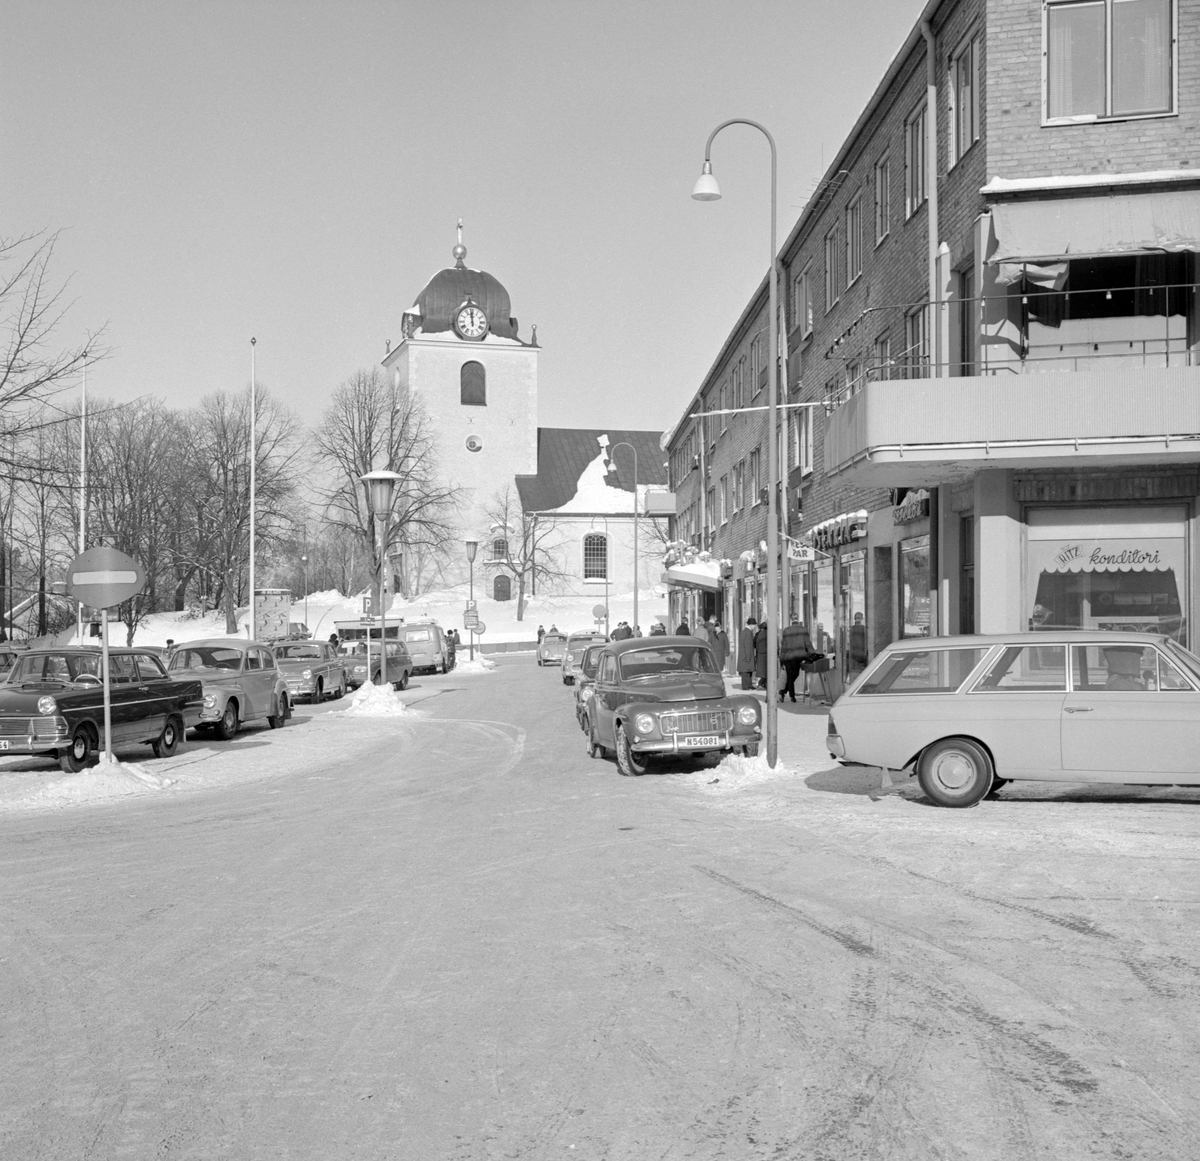 Vy över Stora torget i Mjölby vårvintern 1966 med en kavalkad av tidens bilmodeller.